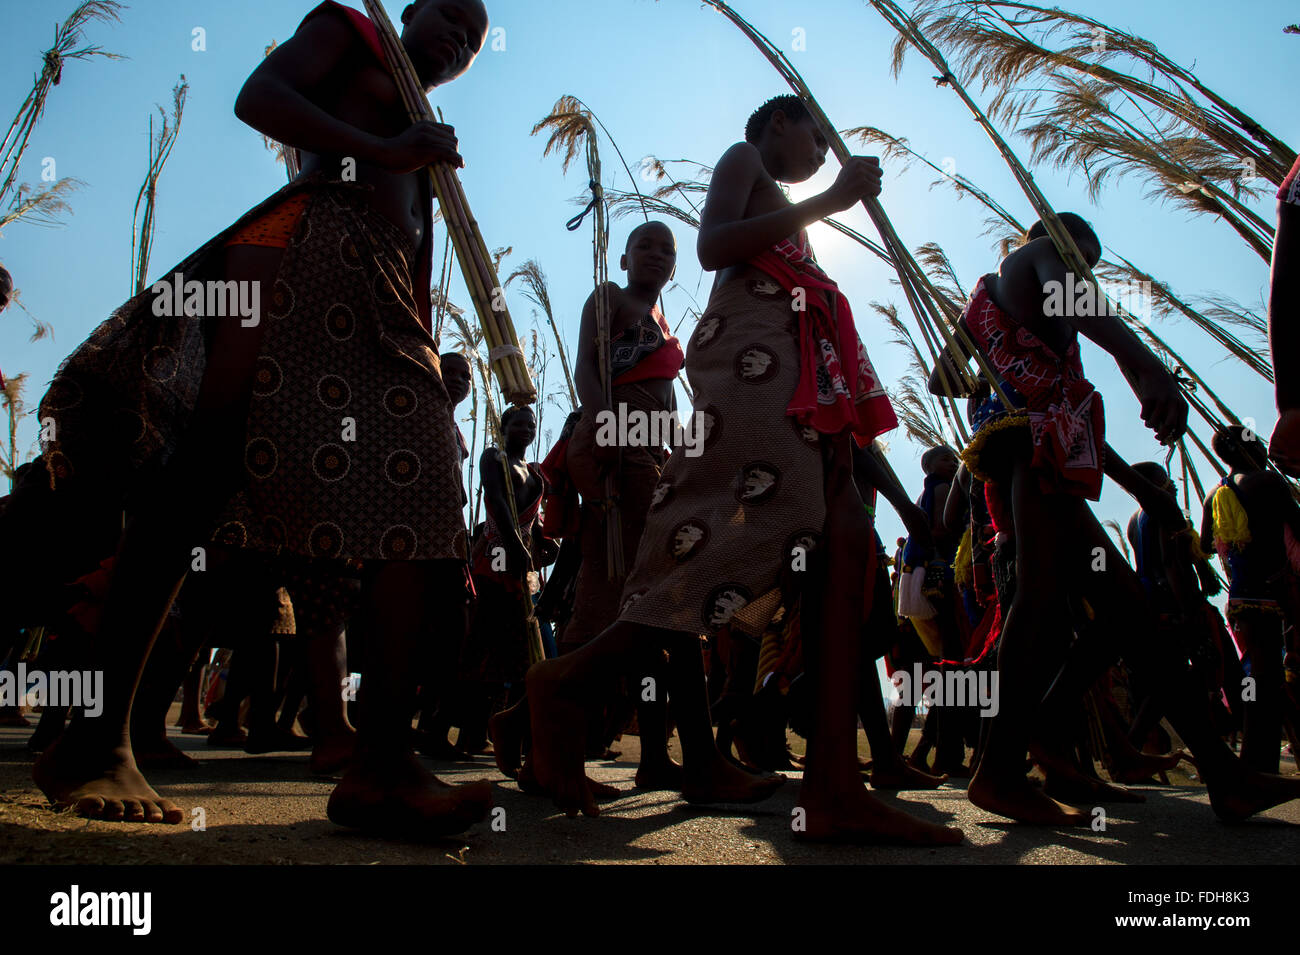 Ludzidzini, Swaziland, Afrique du Sud - Umhlanga Swazi, ou cérémonie danse reed, 100 000 jeunes filles ou femmes célibataires ,, célébrer thei Banque D'Images